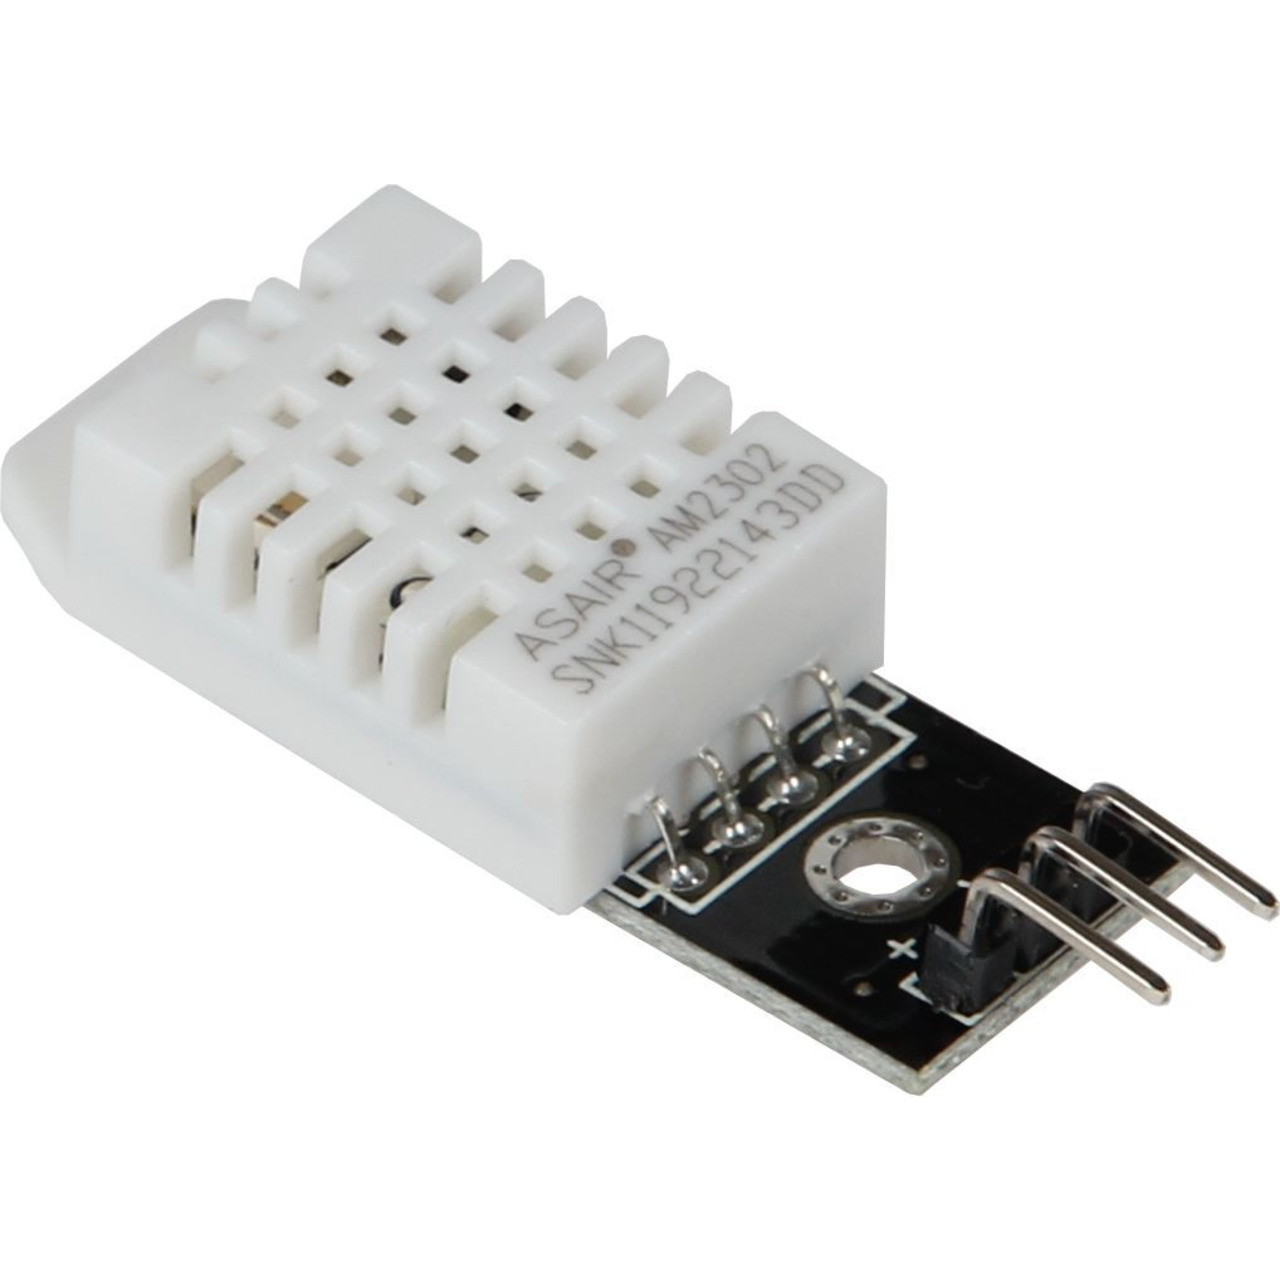 Joy-IT Temperatursensor SEN-DHT22 für SBC-Computer wie Raspberry Pi und Arduino unter Bausätze